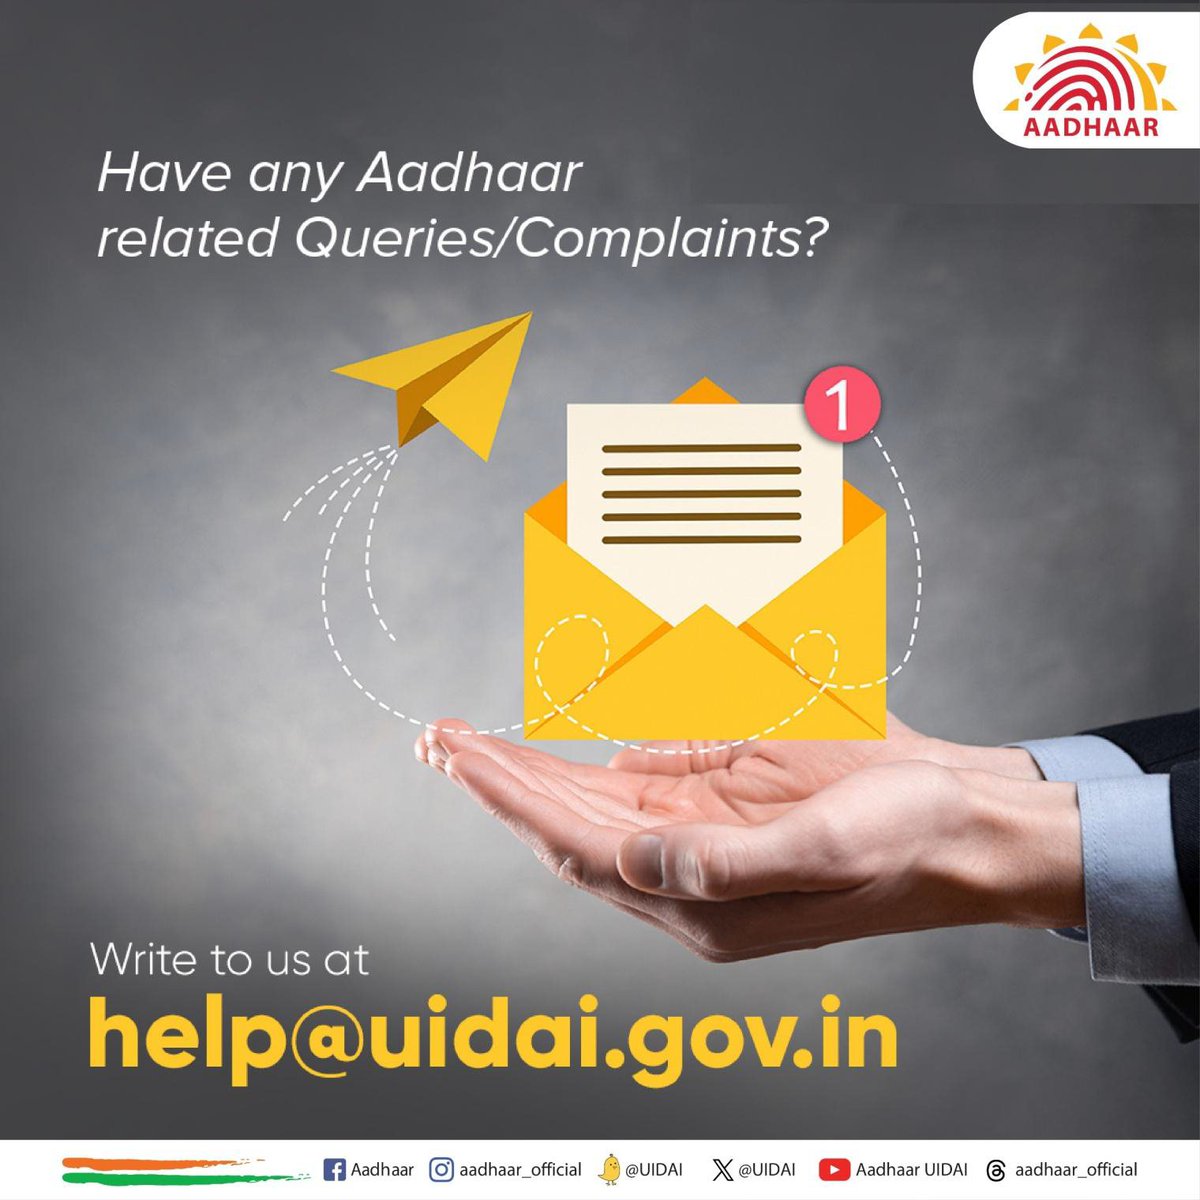 आधार धारकों के प्रश्नों का समाधान सुनिश्चित करना हमारी प्राथमिकता है। आधार से संबंधित किसी भी प्रश्न/शिकायत के लिए आप हमें help@uidai.gov.in पर एक ईमेल भेज सकते हैं।